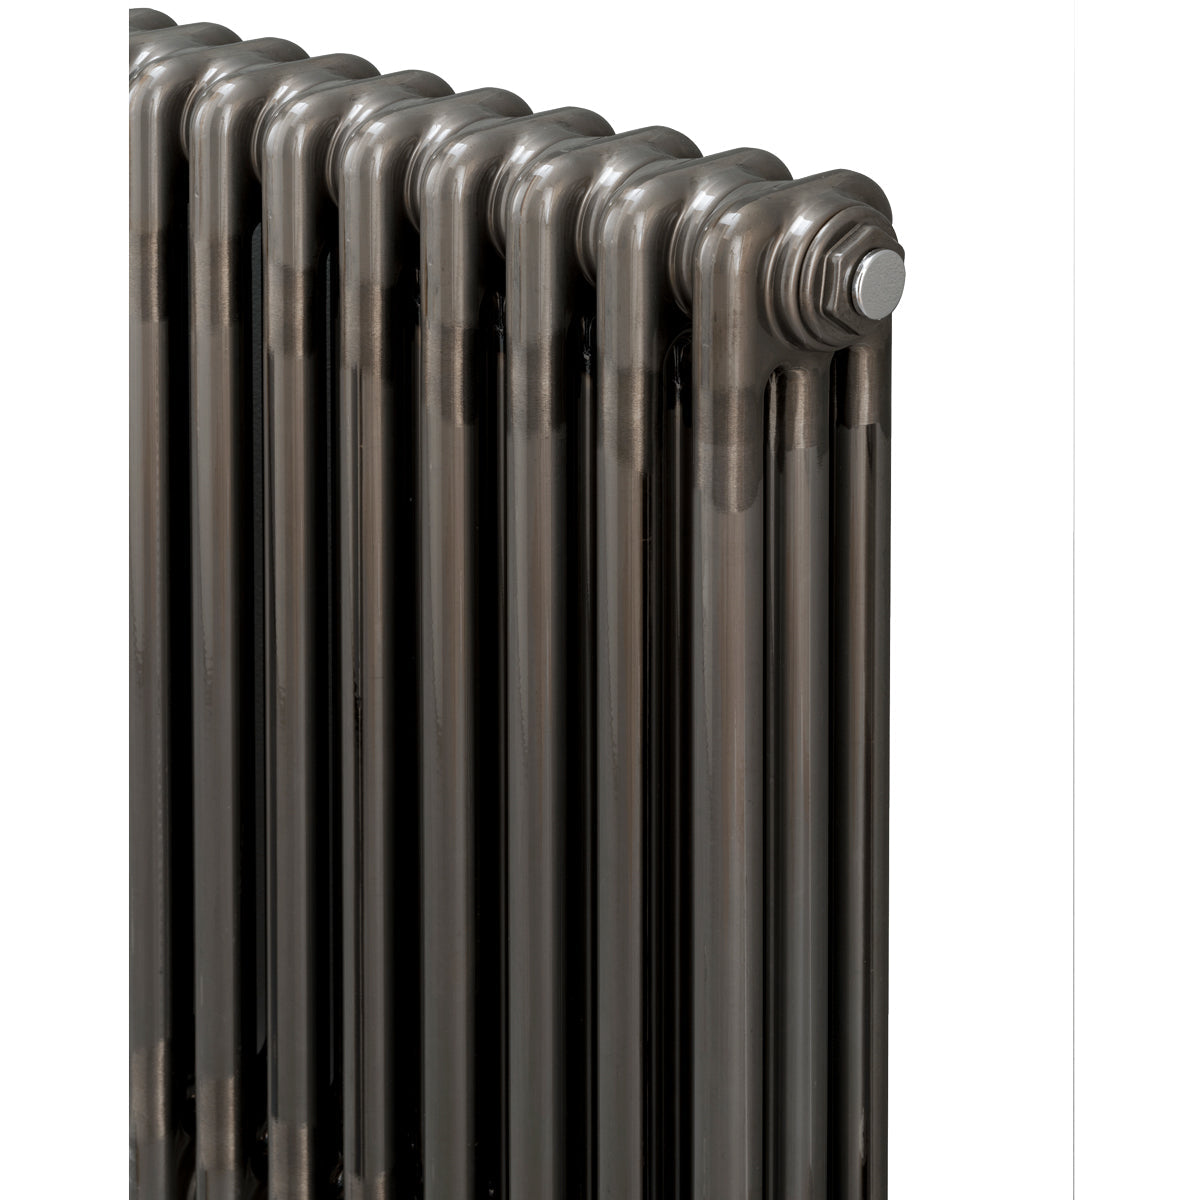 3 Column radiator